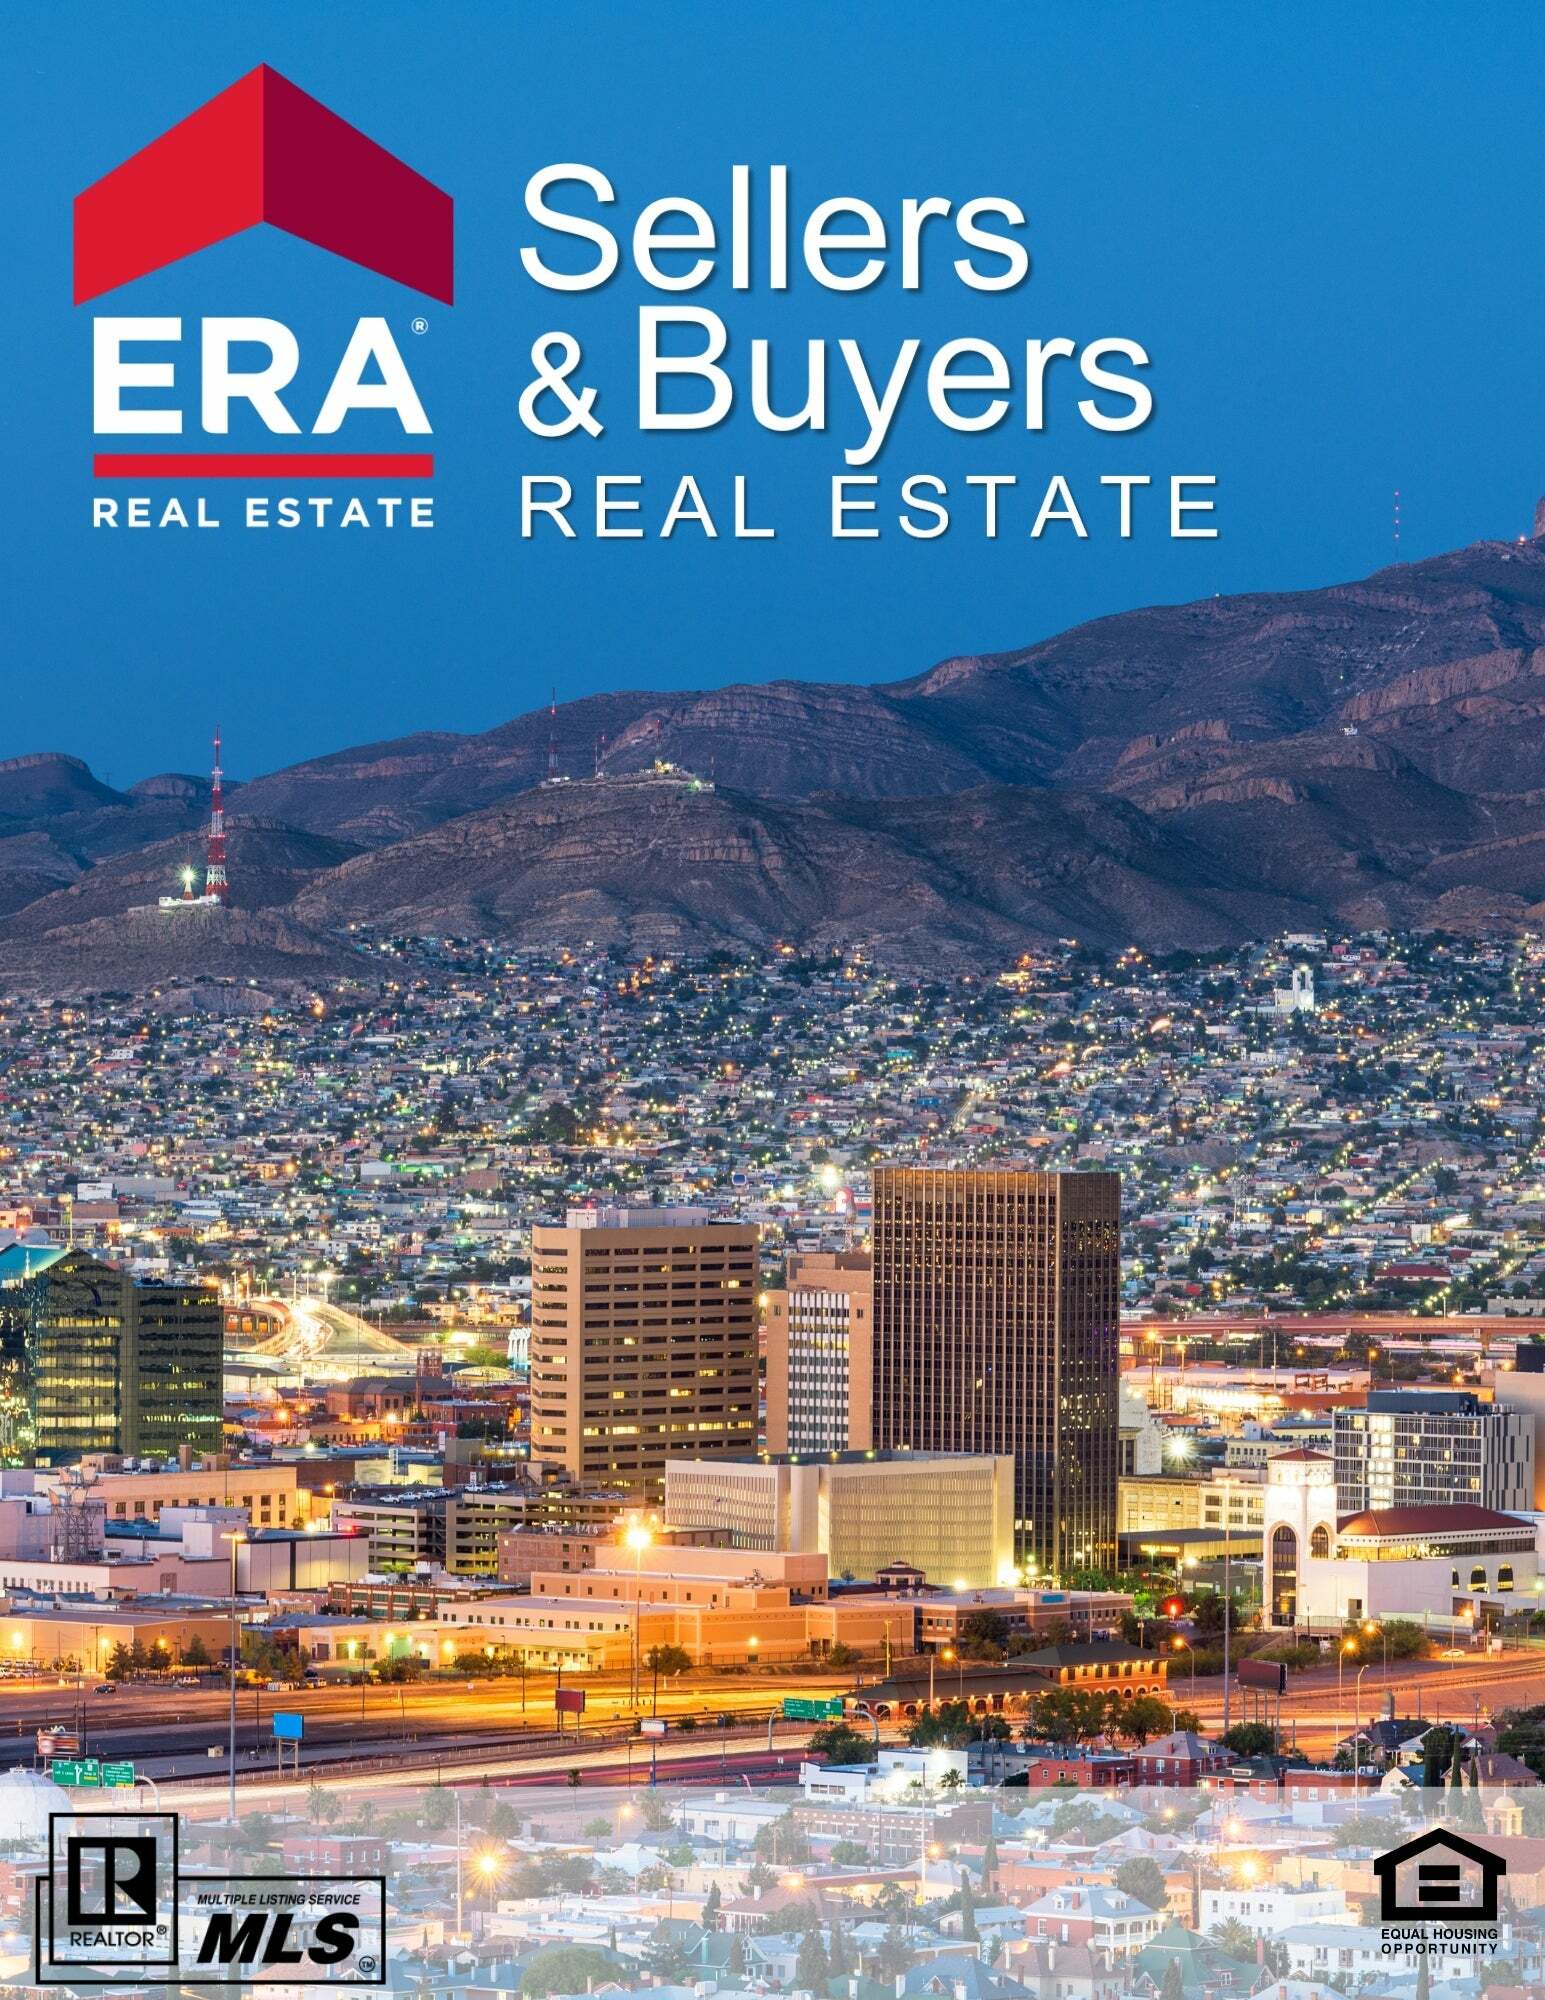 Celeste Palacios, Real Estate Salesperson in El Paso, ERA Sellers & Buyers Real Estate